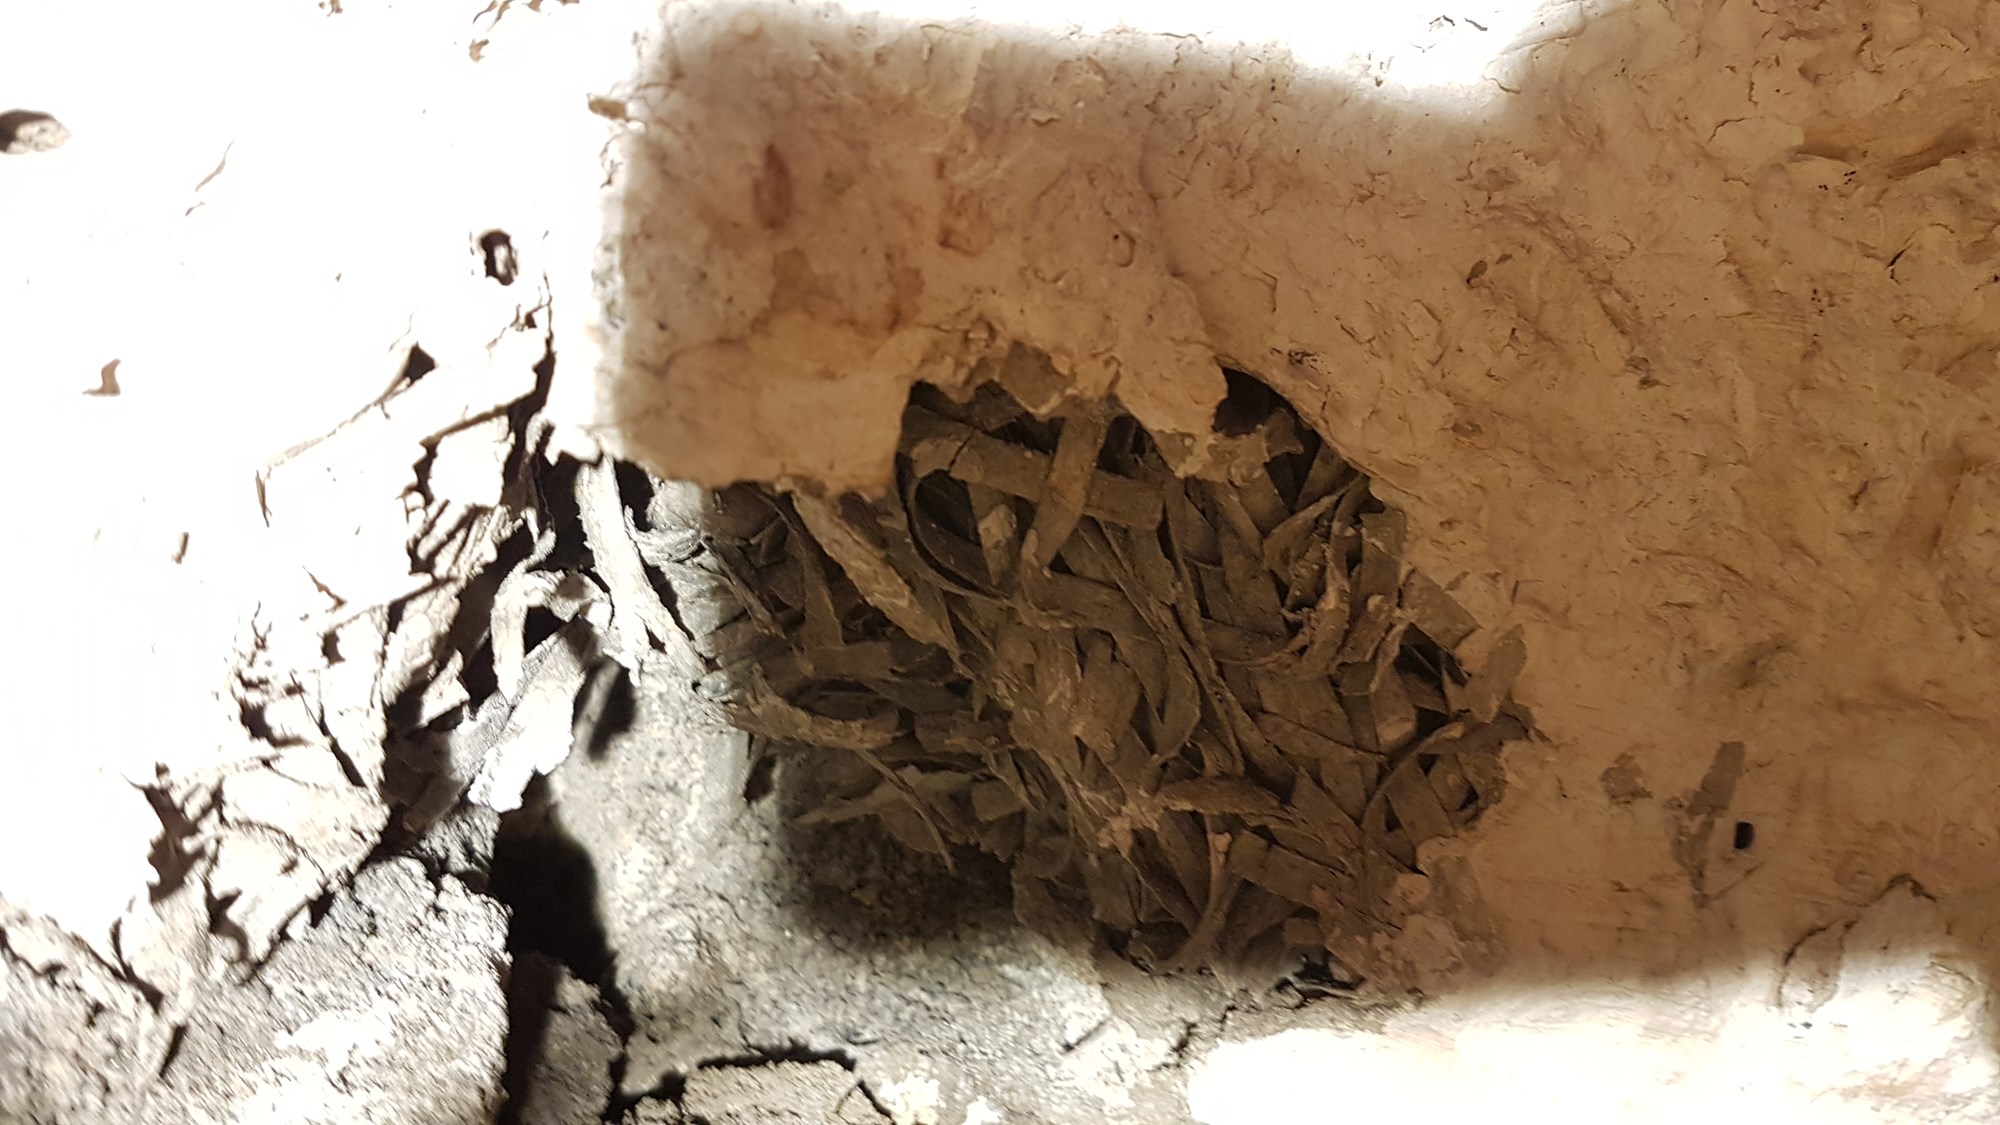 Råtten vegg i kjellerbod, mulig asbest? Tips ideer til hva materialet i muren bak er.  - 20180613_224617.jpg - hugohytte